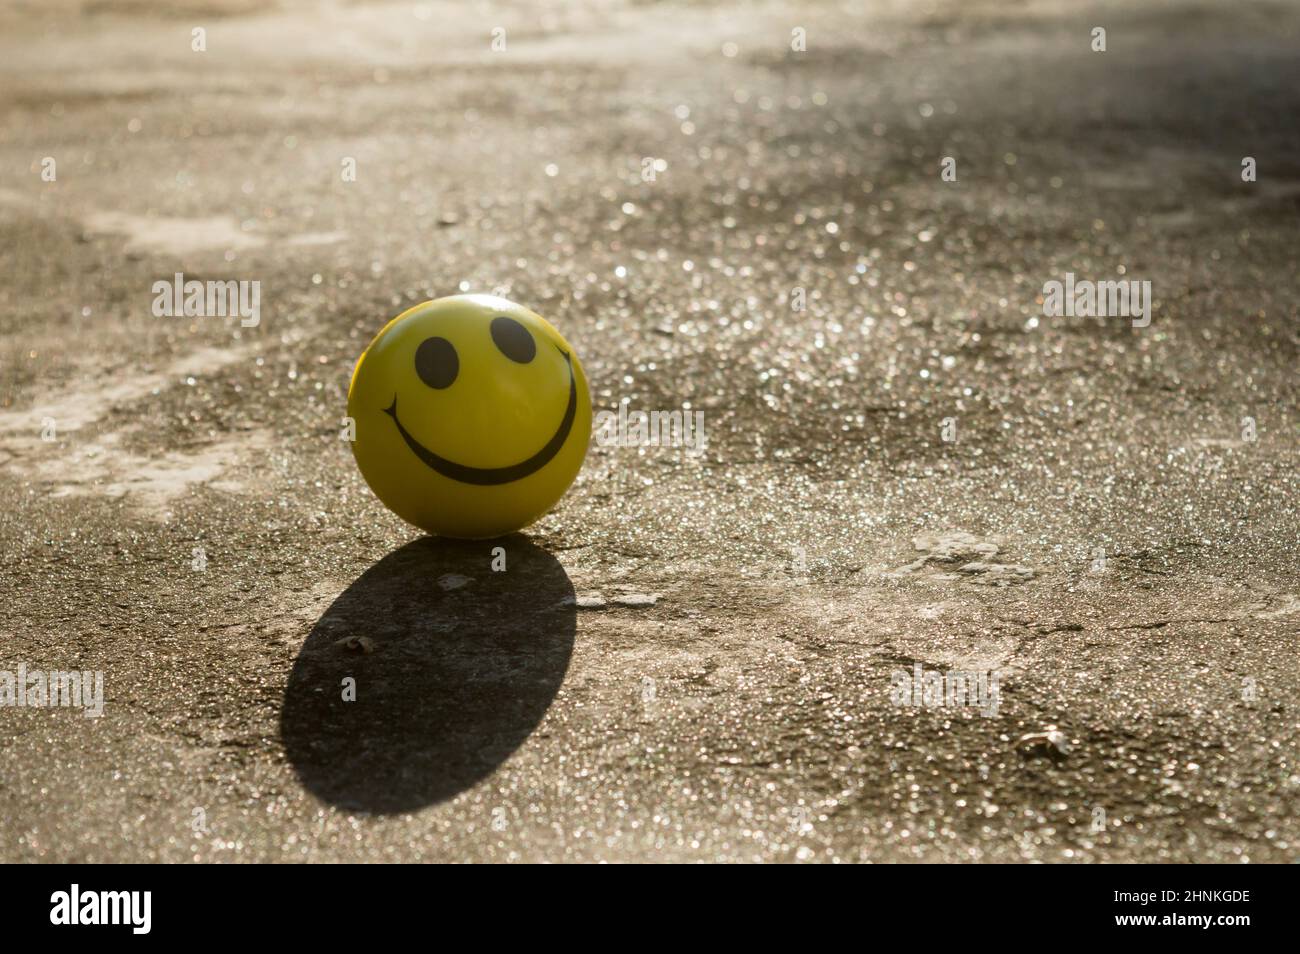 Das ikonische gelbe Smiley-Gesicht mit seinem perfekten Kreis, zwei ovalen Augen und einem großen halbkreisförmigen Mund, der ein Symbol des Glücks darstellt, das auf SA isoliert ist Stockfoto